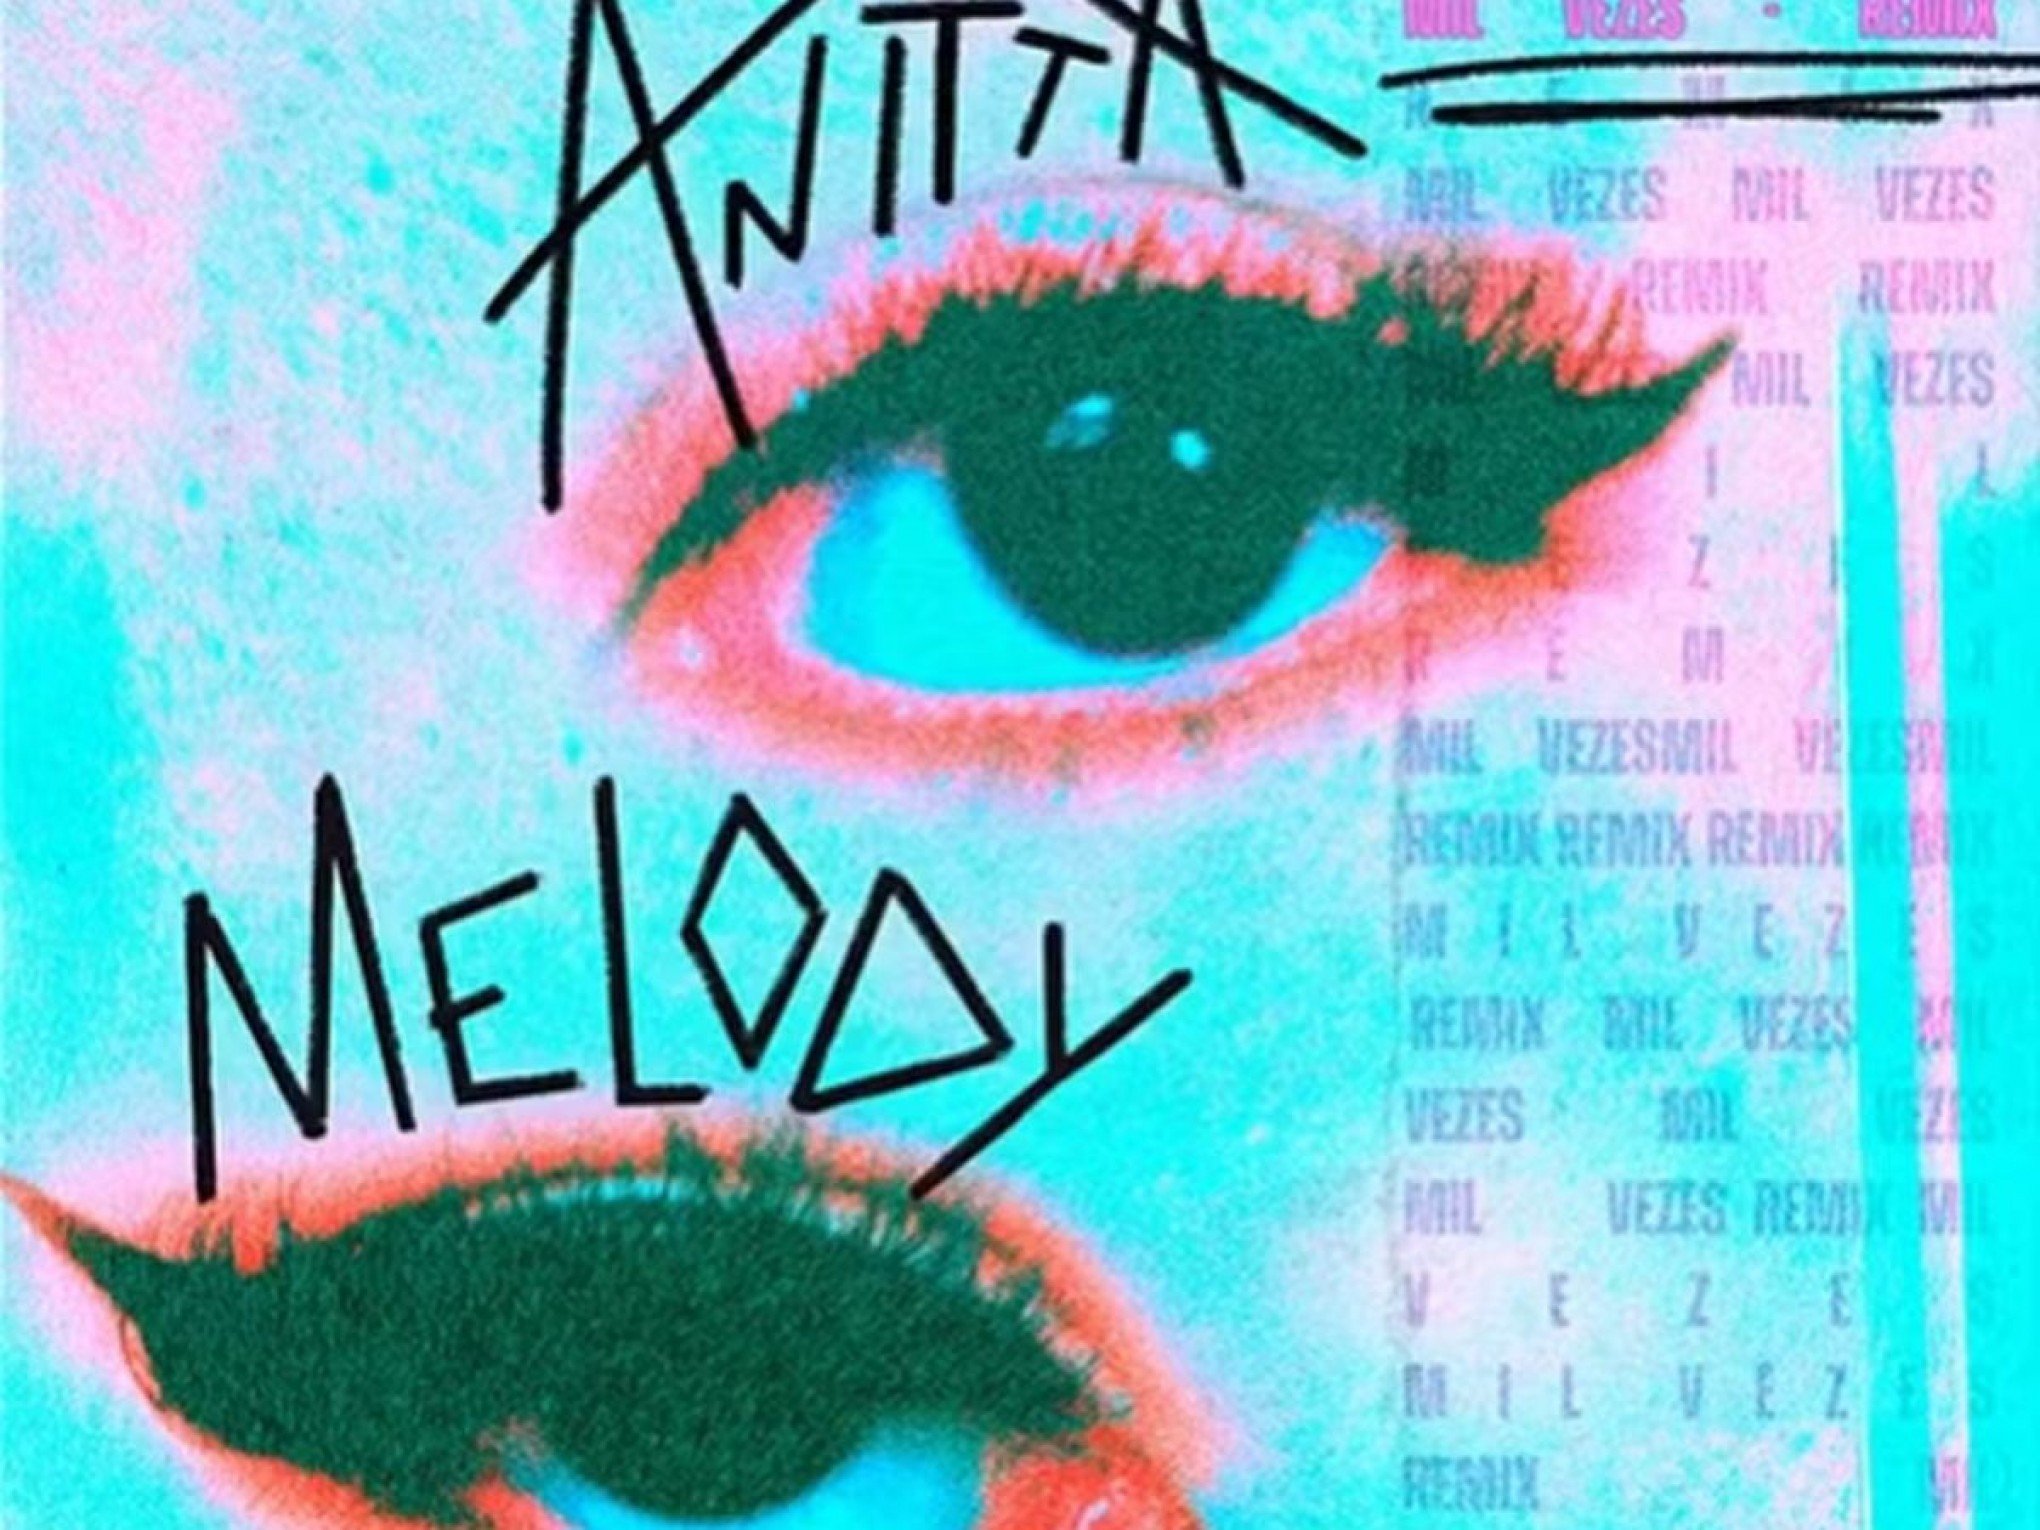 "Mulher, por favor, libera": Anitta e Melody na mesma música? Remix de Mil Veces será lançado nesta quinta-feira